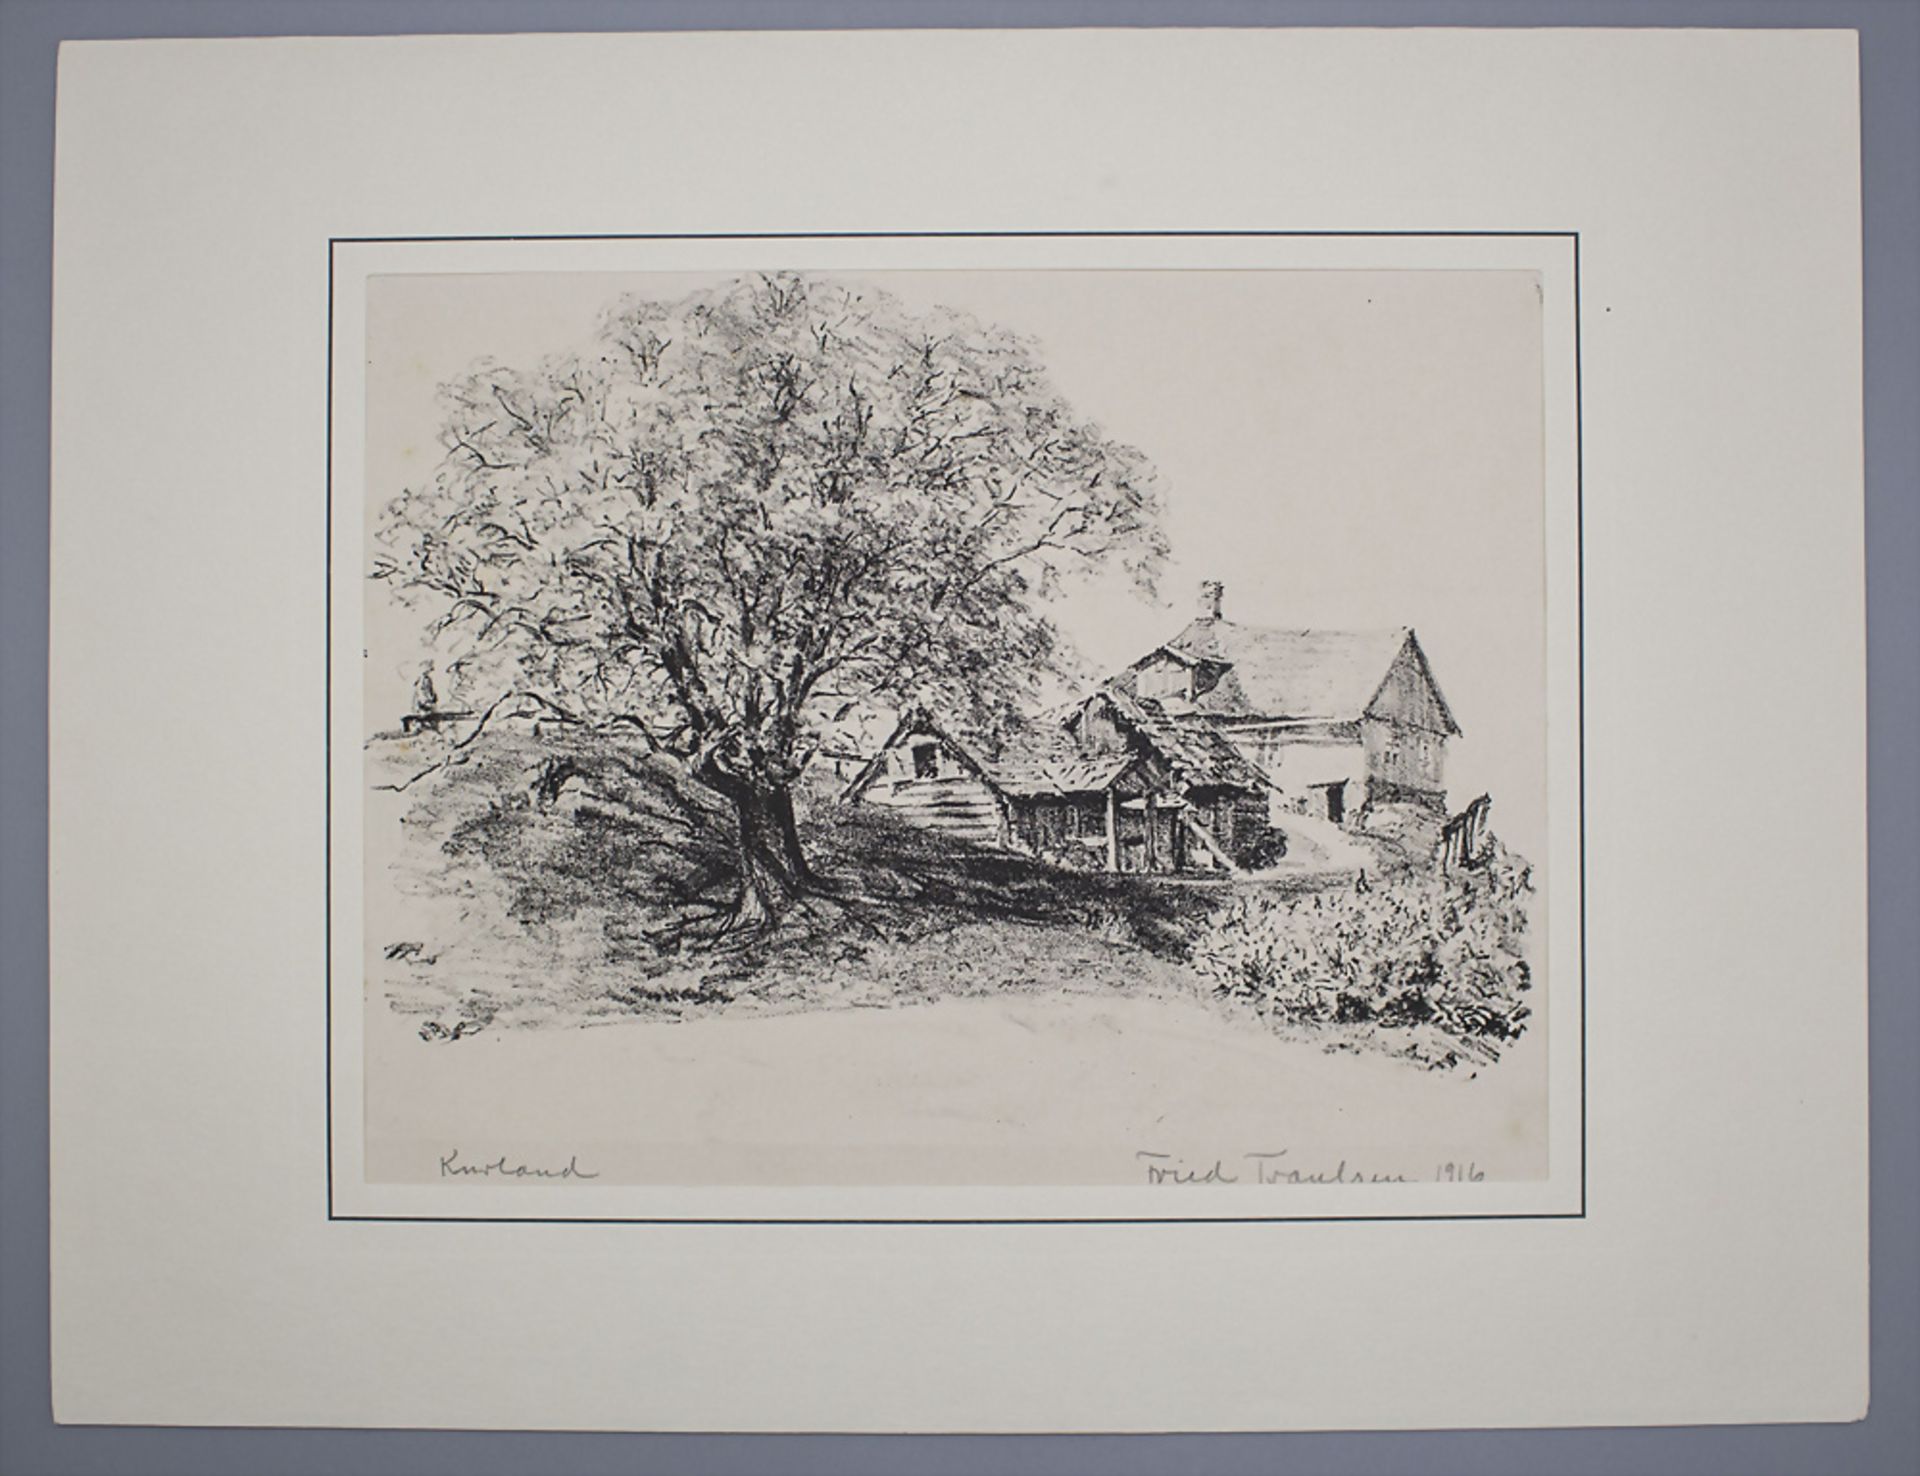 Friedrich TRAULSEN (1887-1971), 'Kurland', 1916